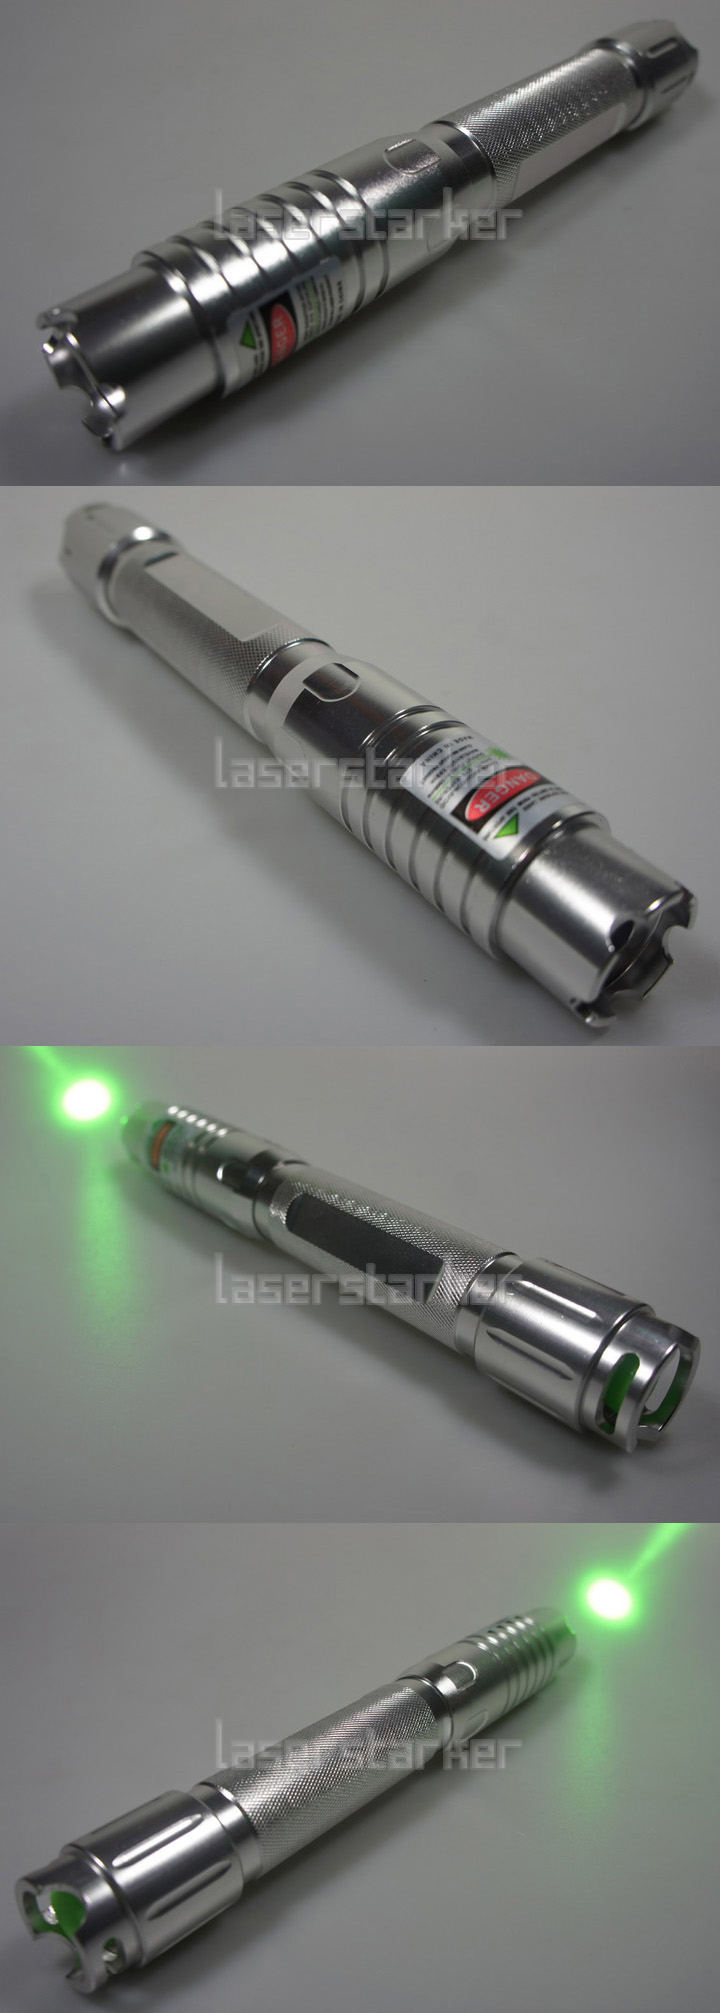 Extreme Laserpointer 3000mW Grün kaufen